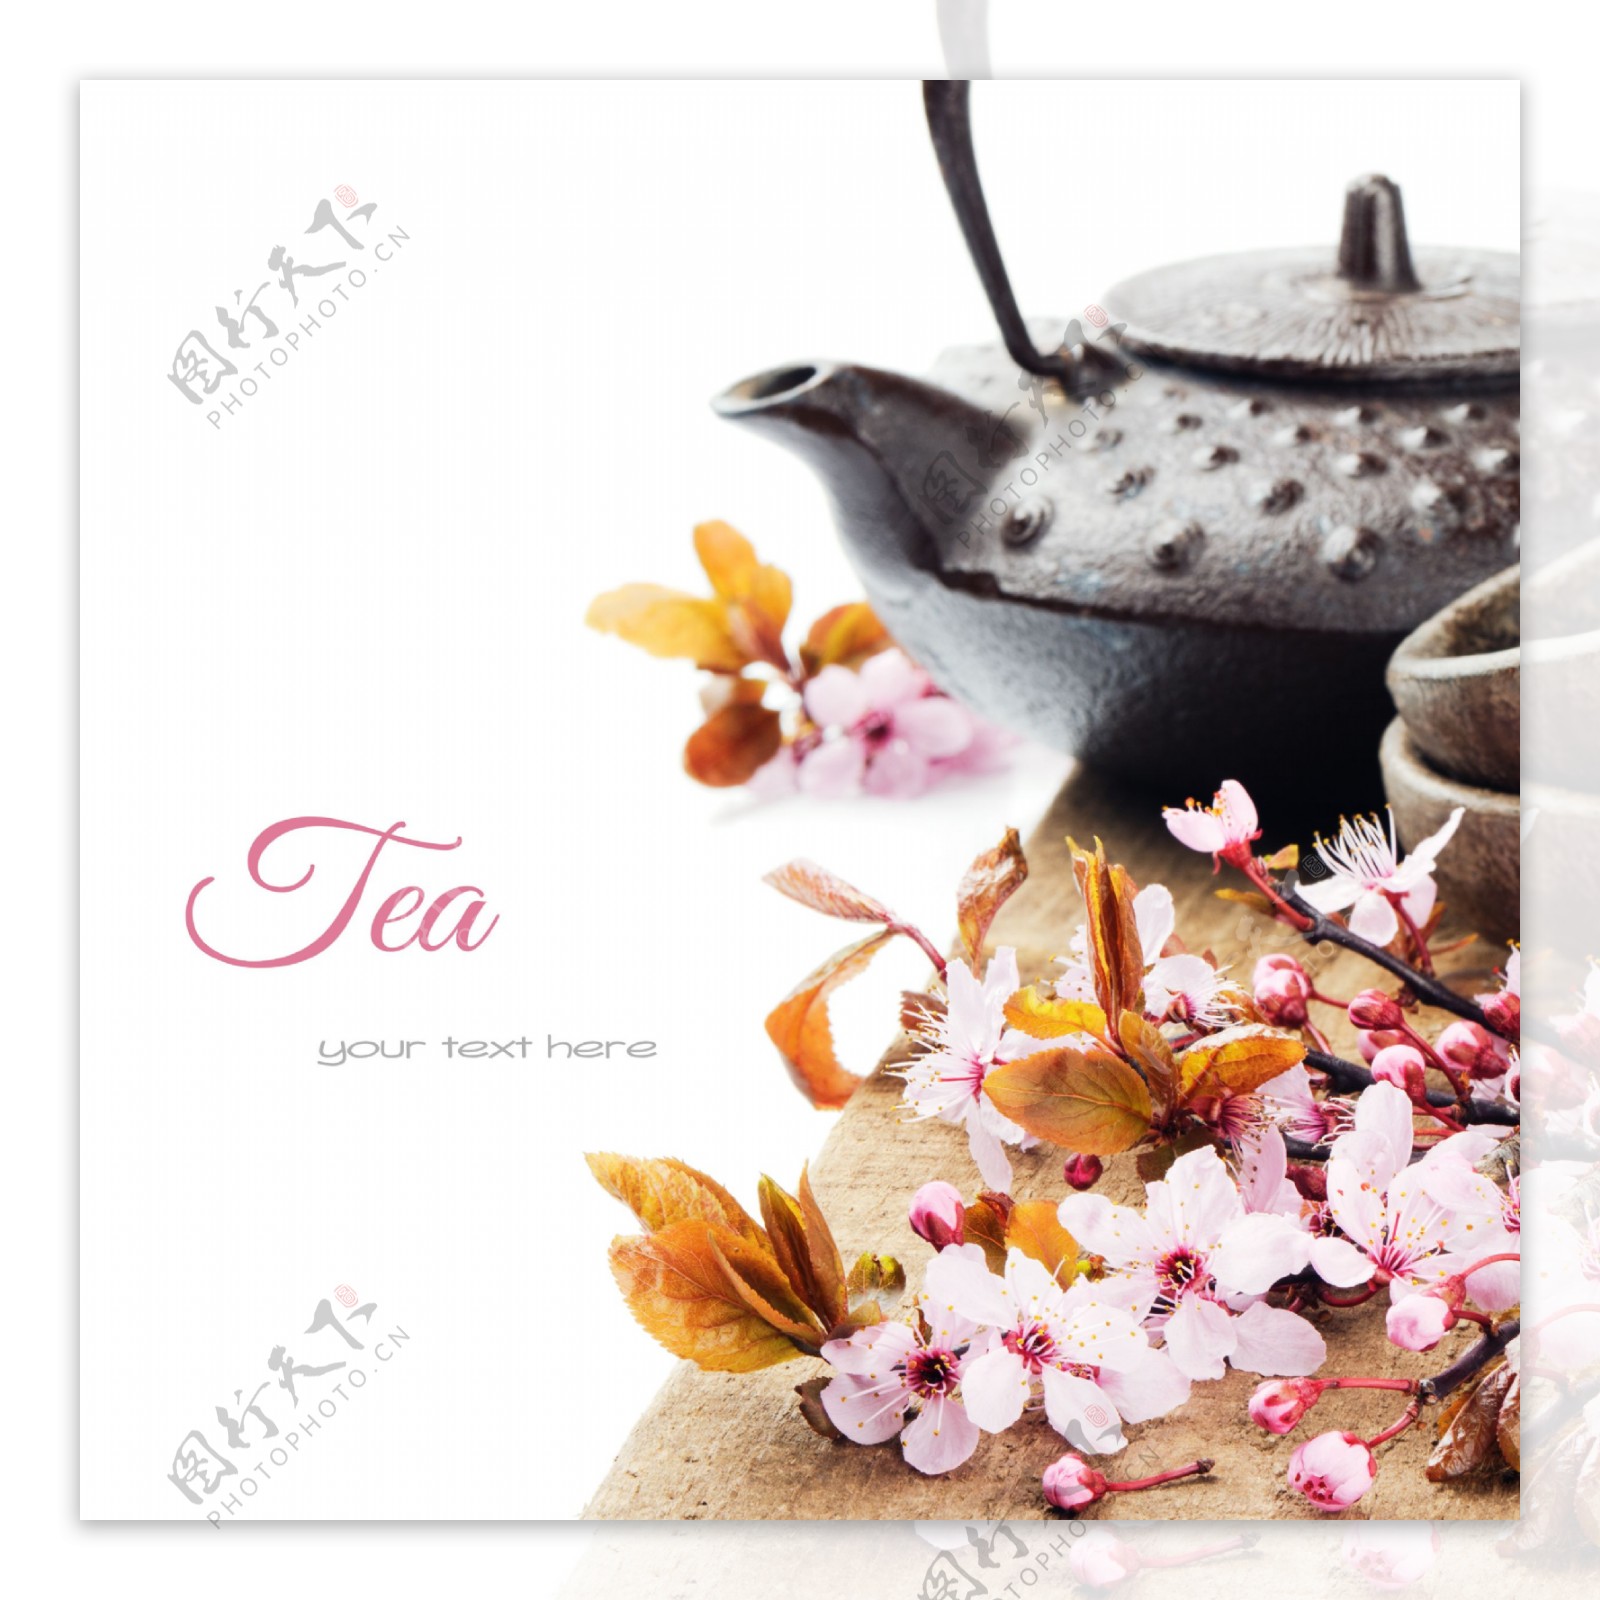 茶壶和桃花图片